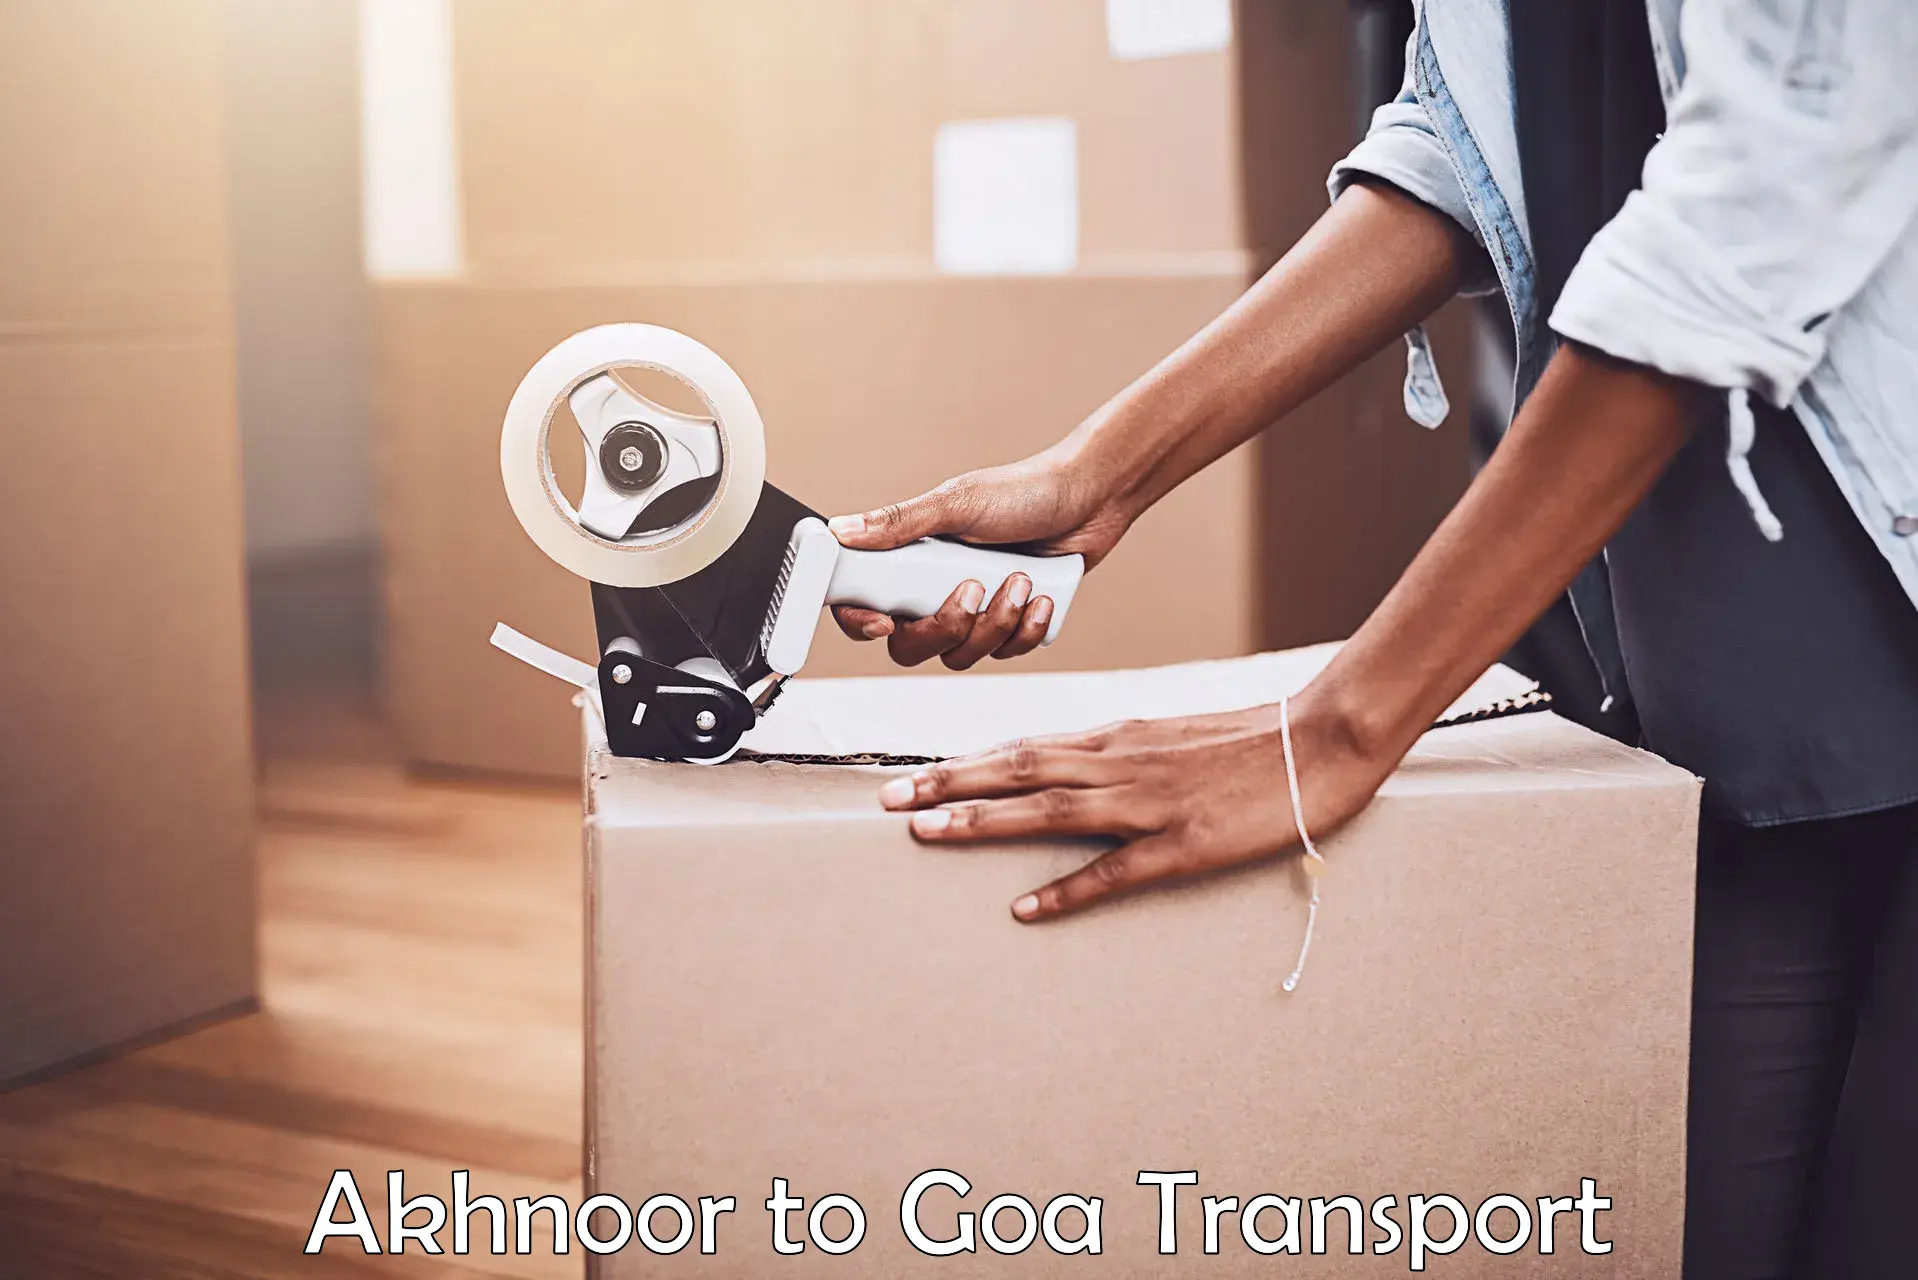 Commercial transport service Akhnoor to Canacona